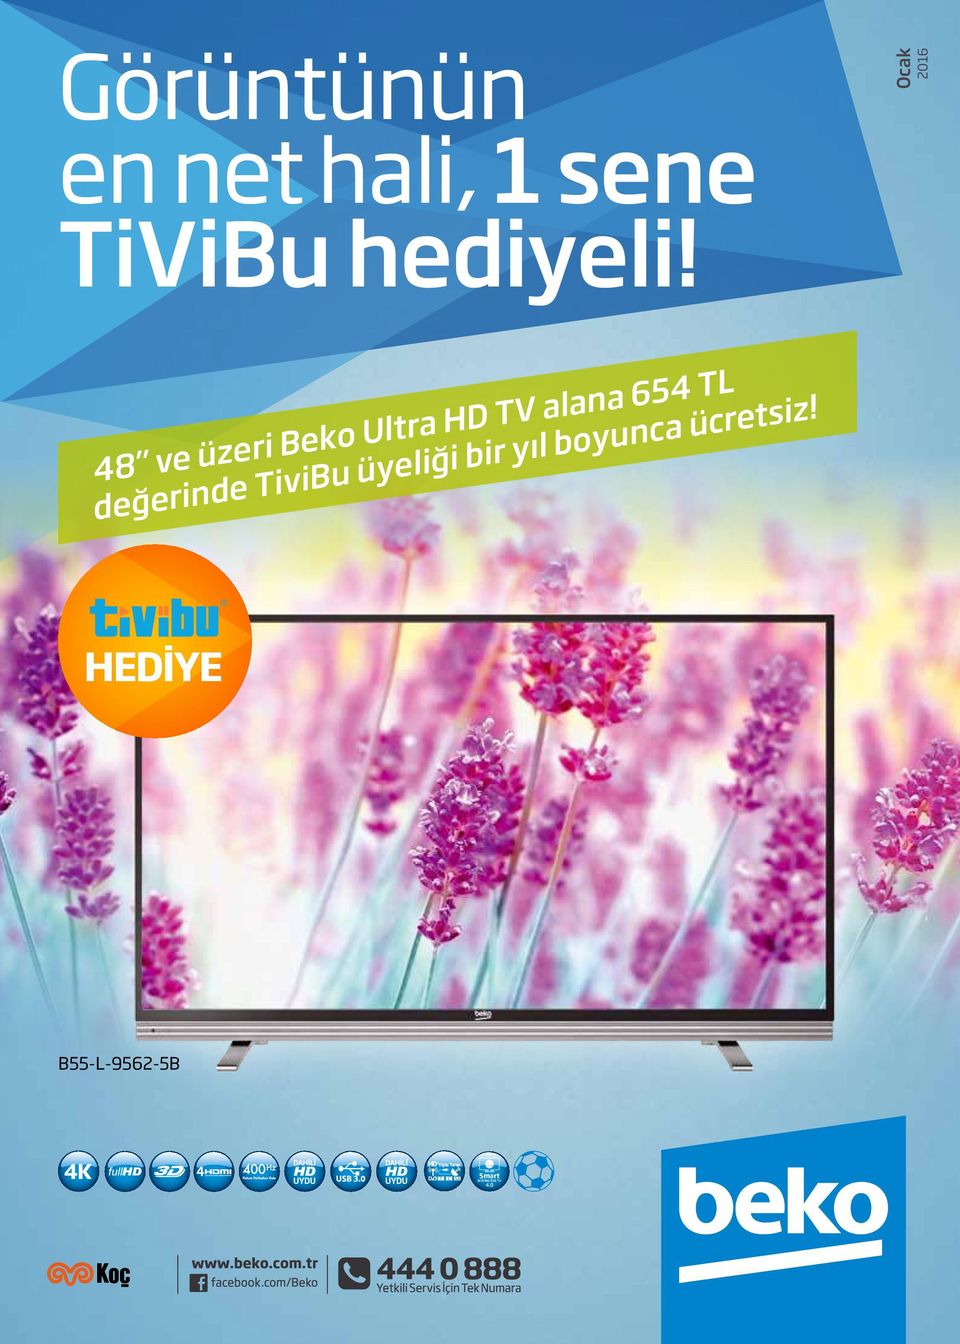 Ocak 2016 48 ve üzeri Beko Ultra HD TV alana